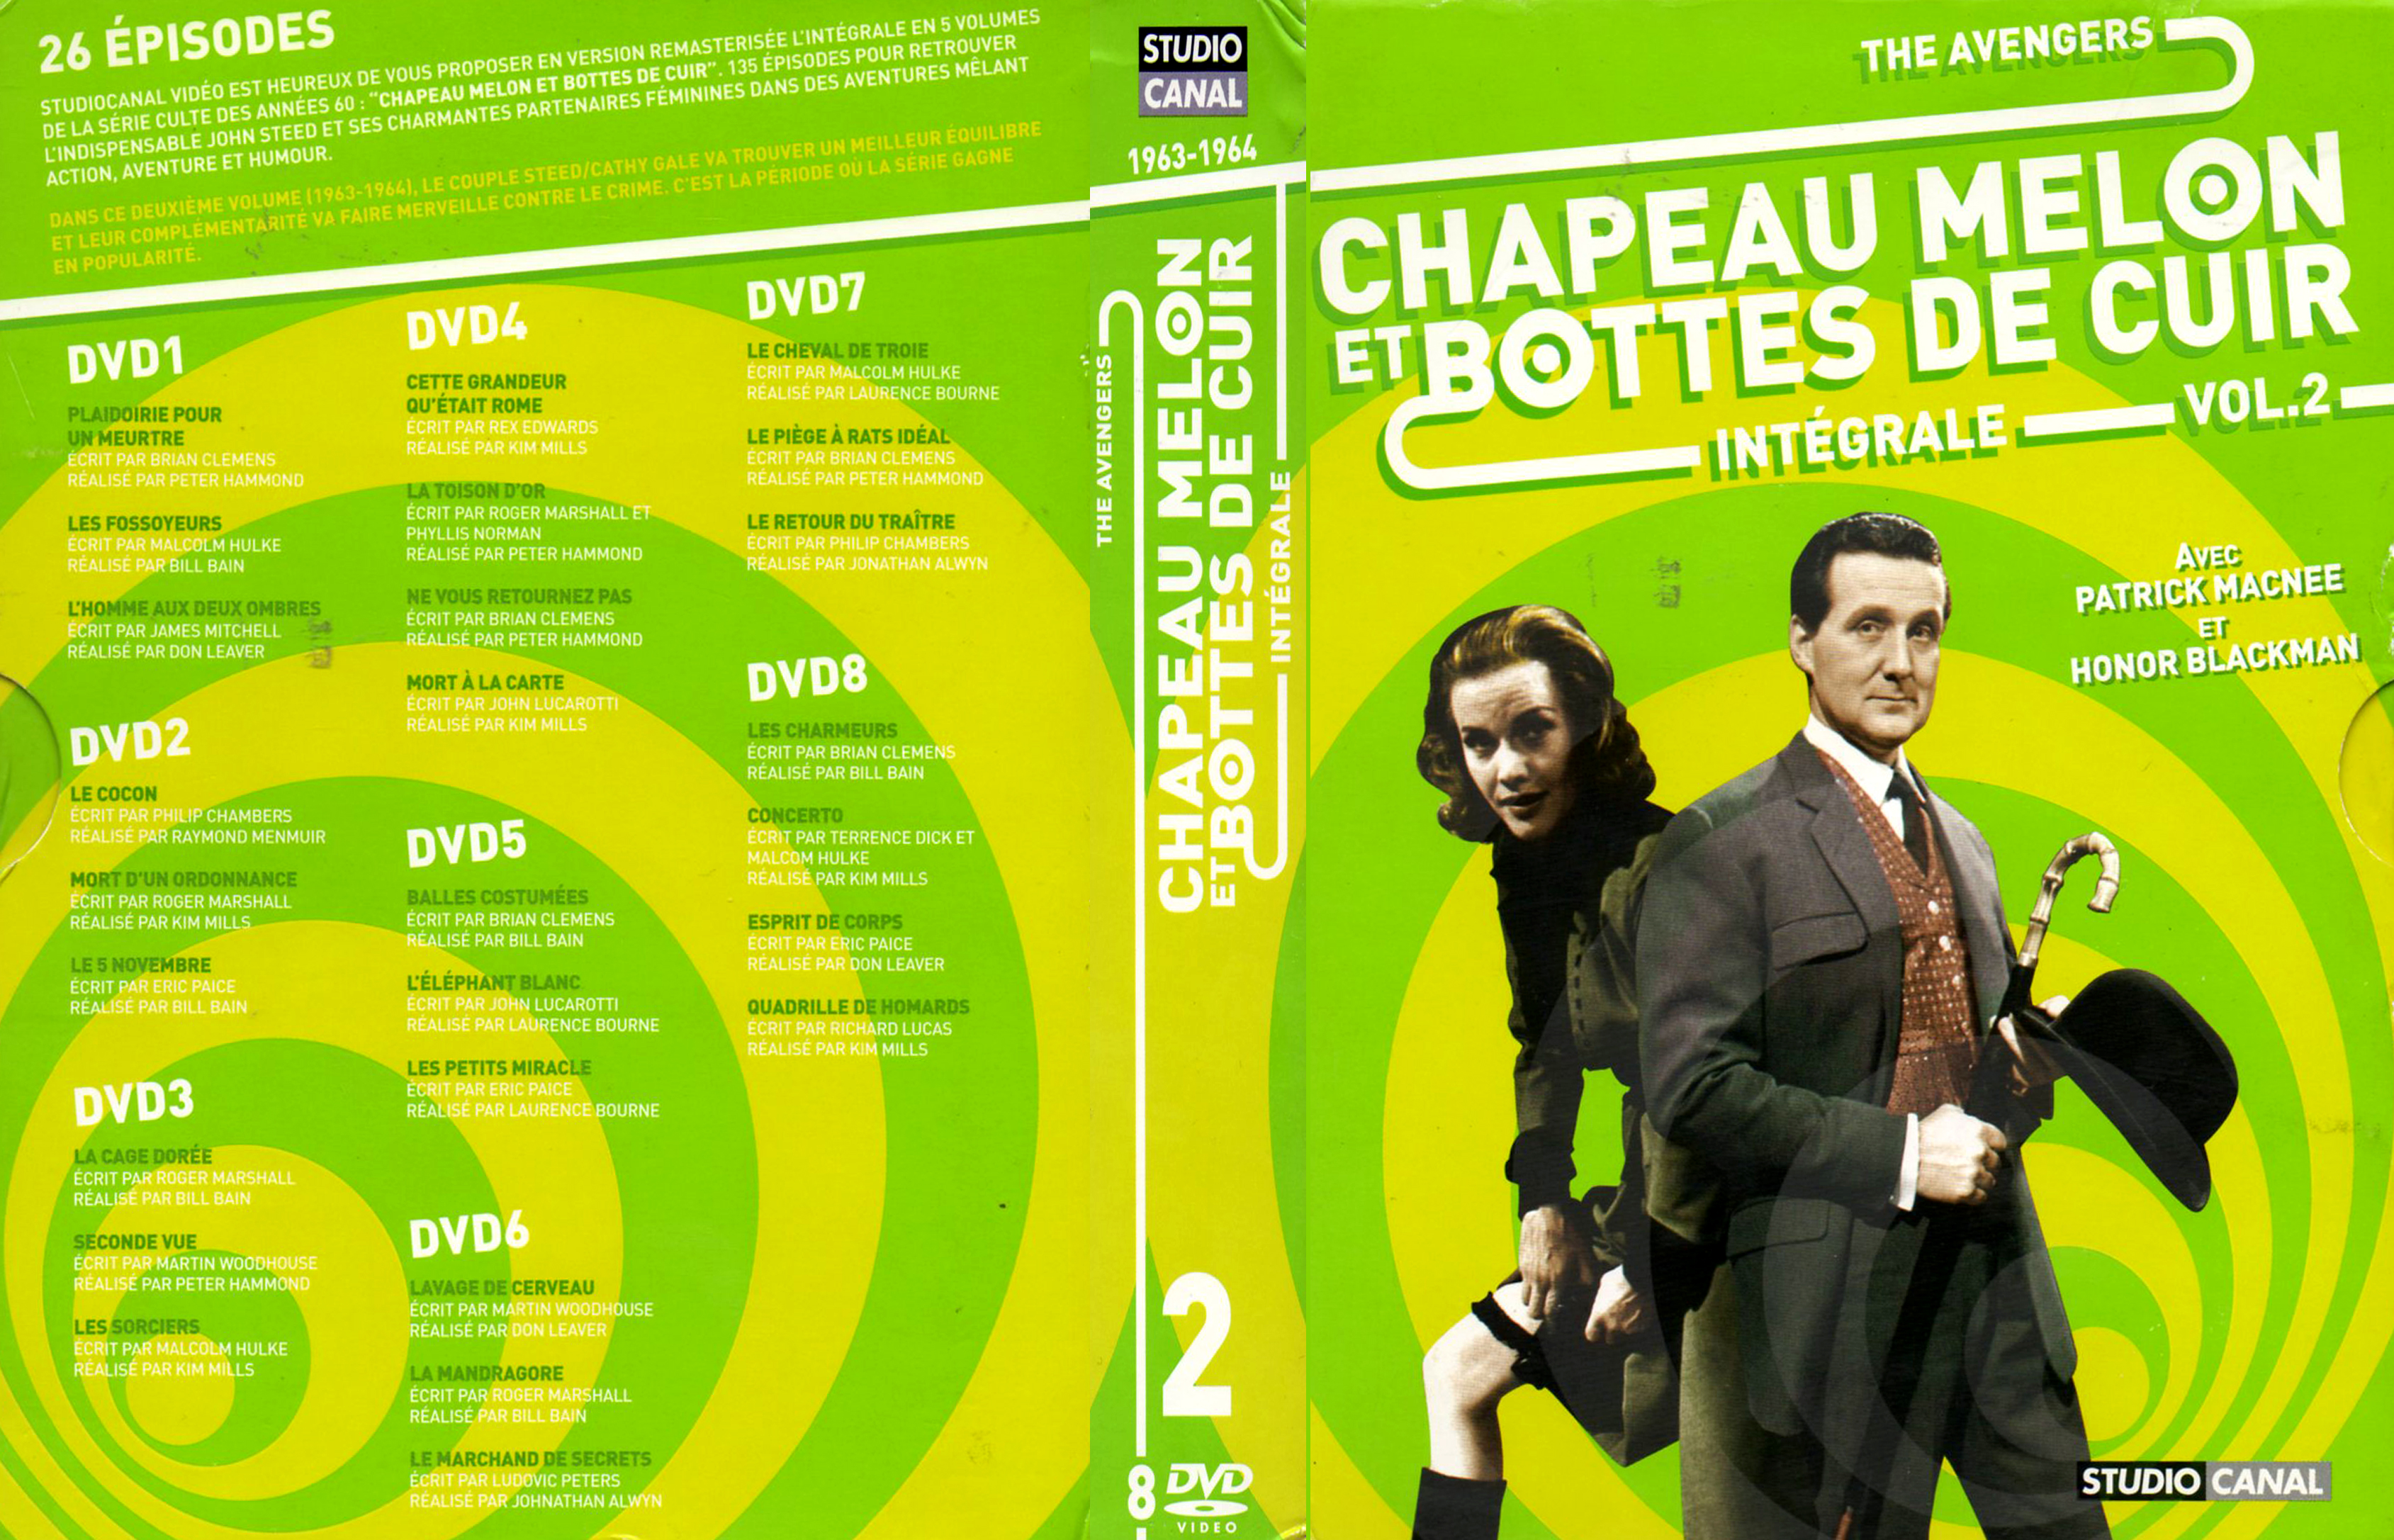 Jaquette DVD Chapeau melon et bottes de cuir Integrale vol 02